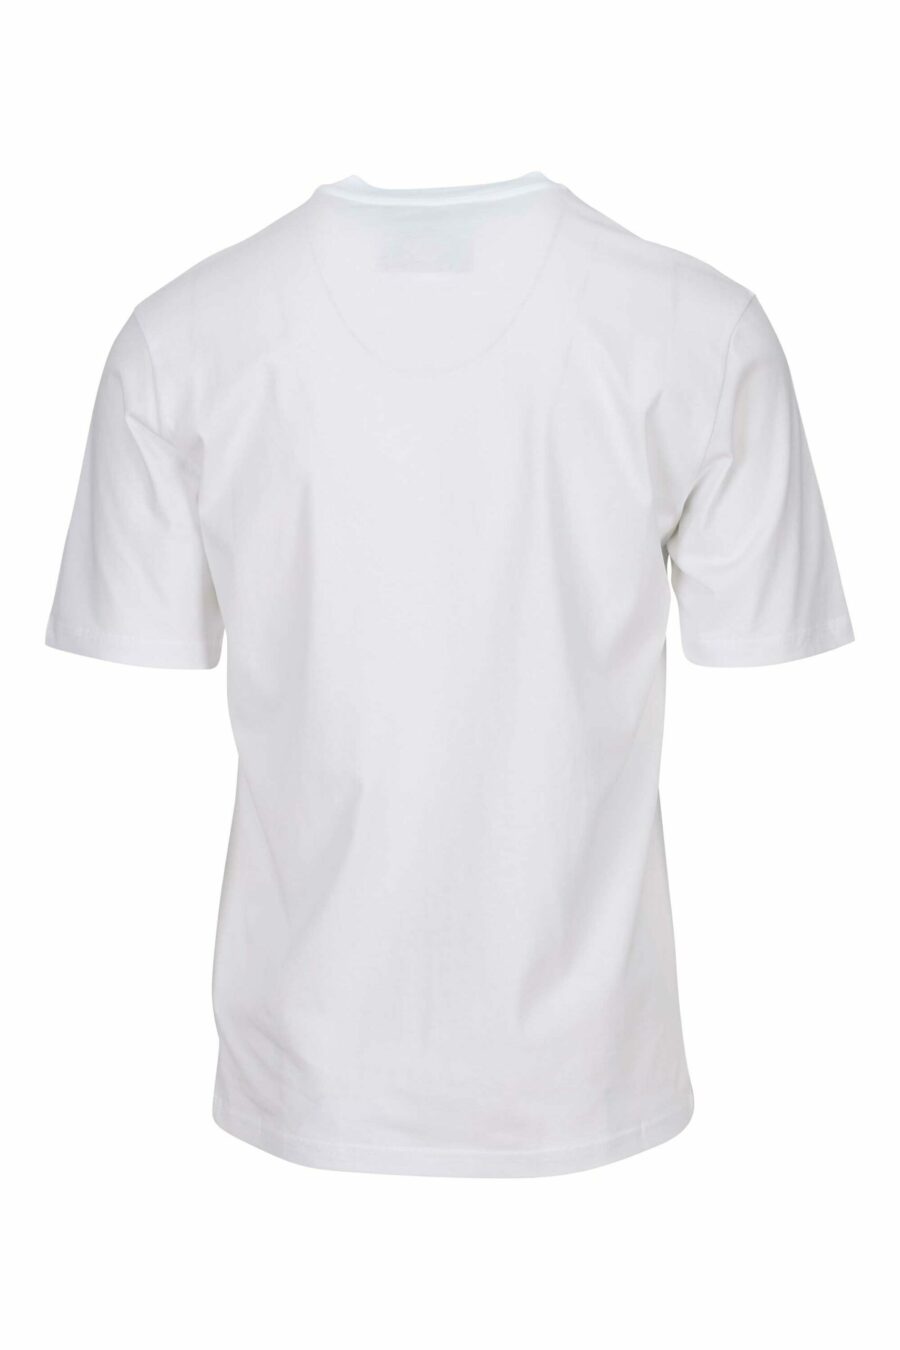 T-shirt branca com desenho de mini logótipo de urso - 667113767673 1 à escala